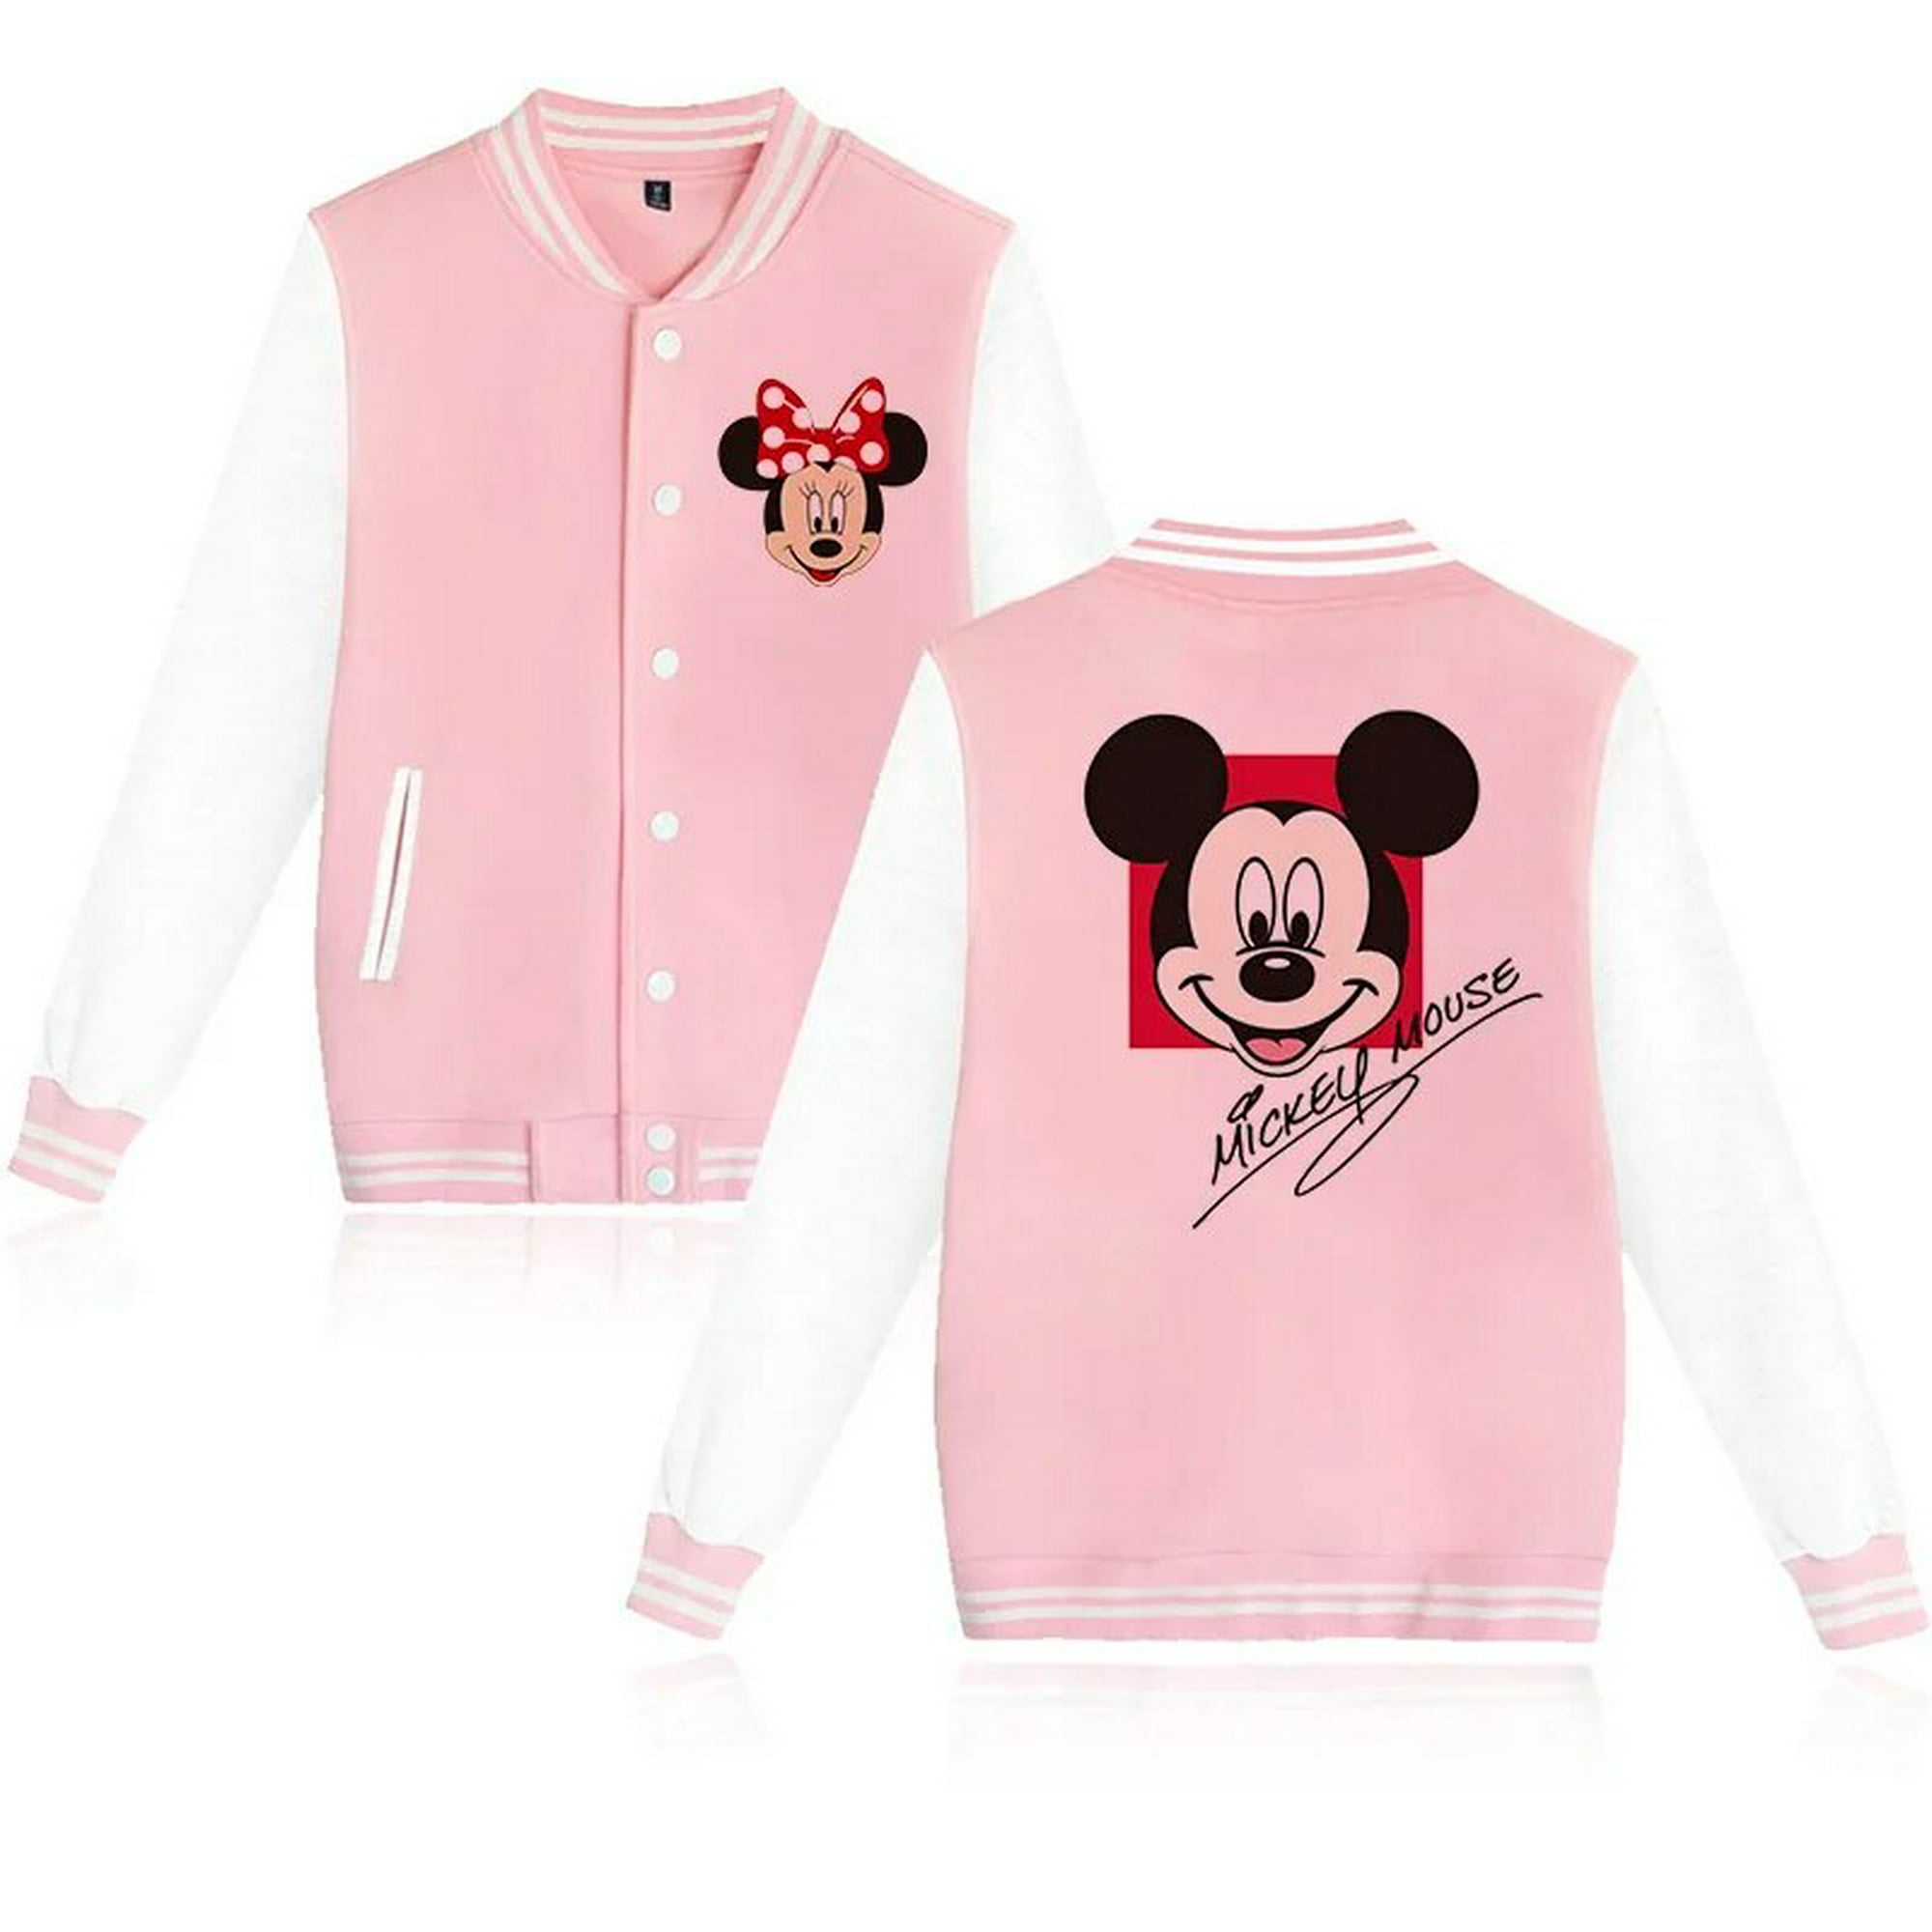 Sudadera Mickey & Minnie  Comprar sudaderas de Disney TOP ✓